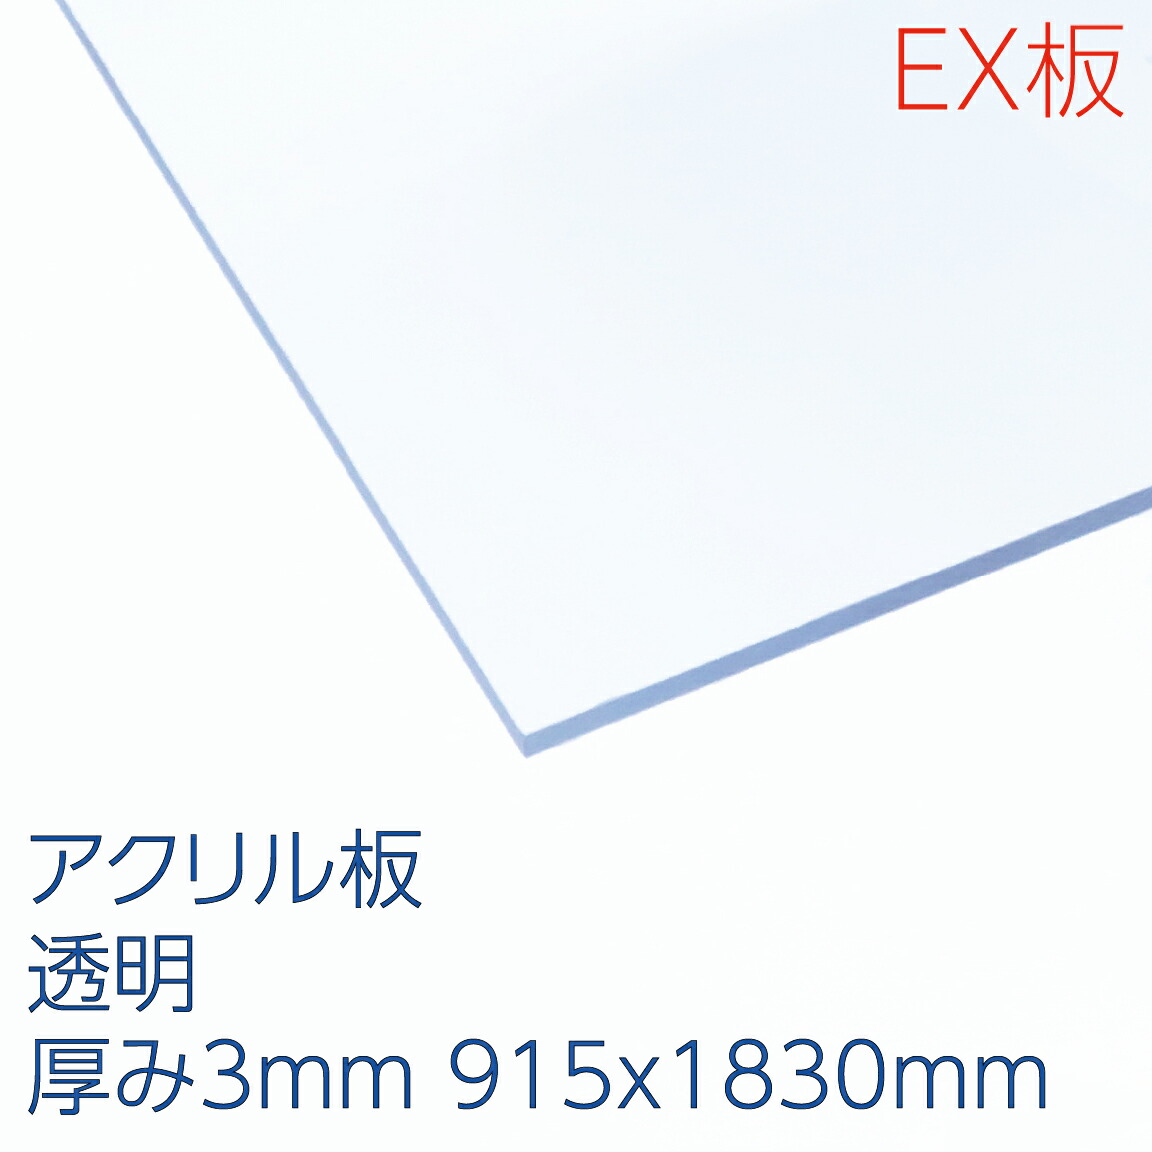 企業様向け 3x6板 アクリルＥＸ板透明 厚み3mm 915X1830mm お気に入り 予約販売品 アクリサンデー アクリル プラスチック